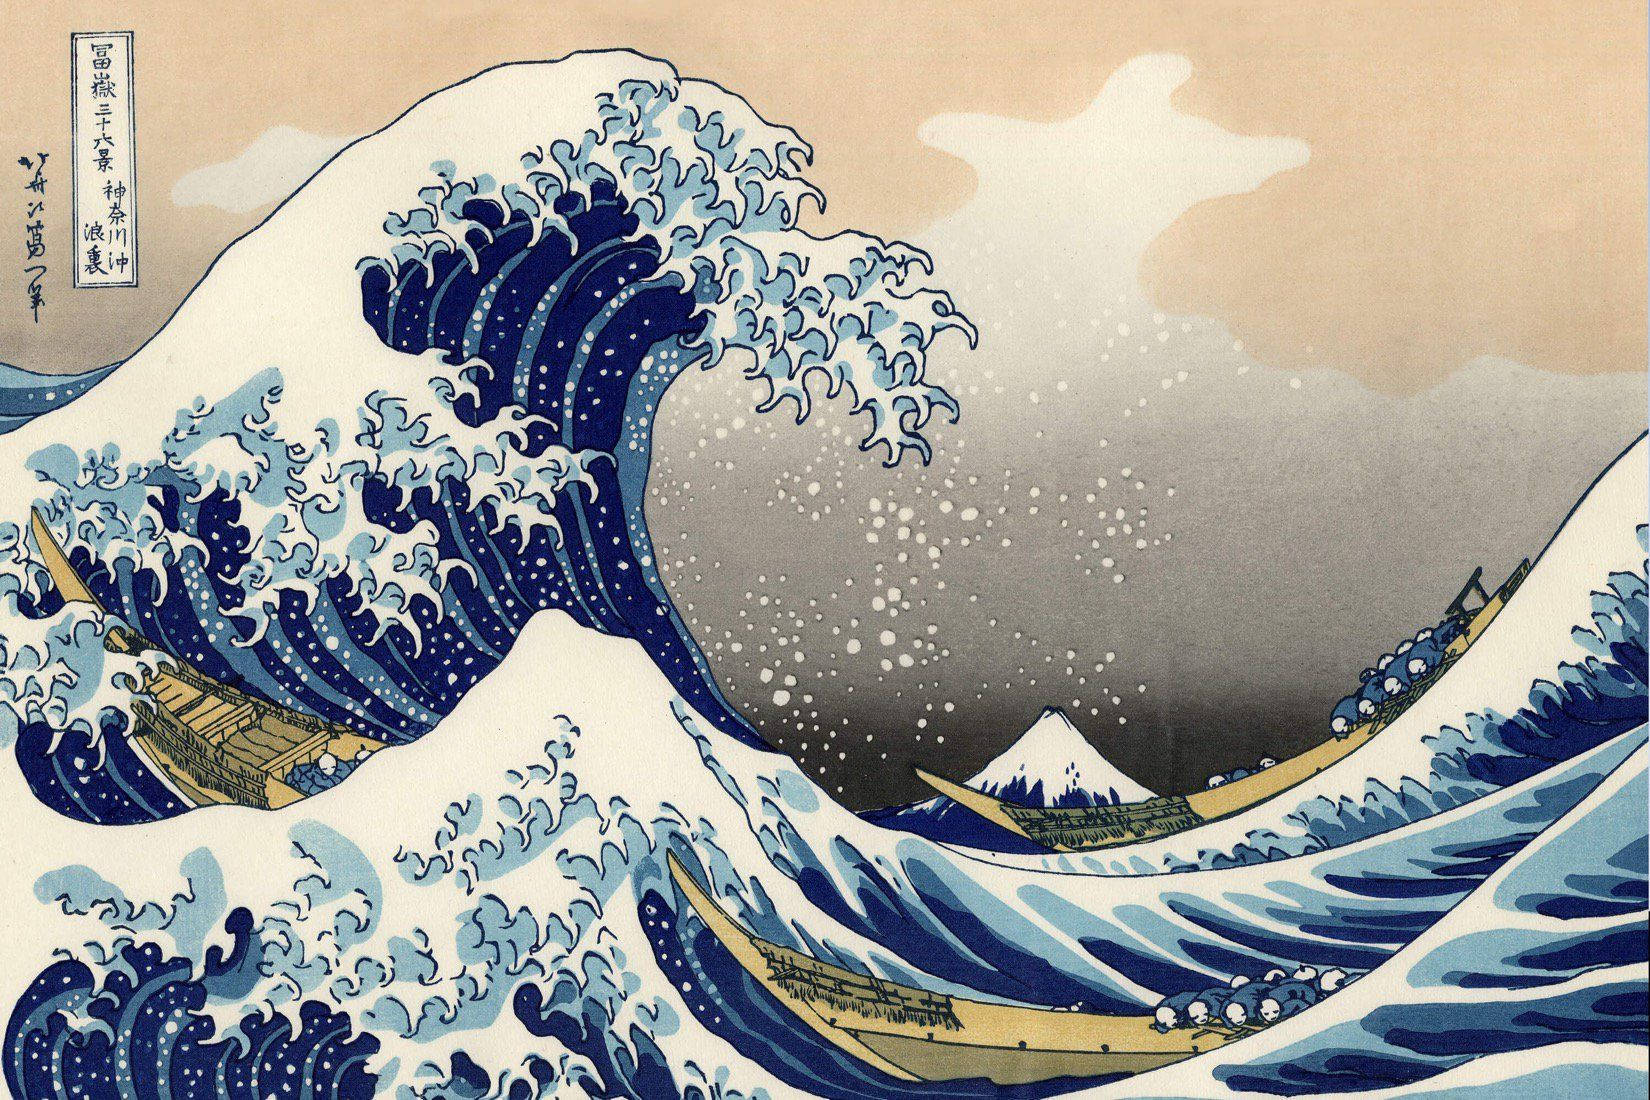 Japanese art of flowing blue ocean waves, painting.